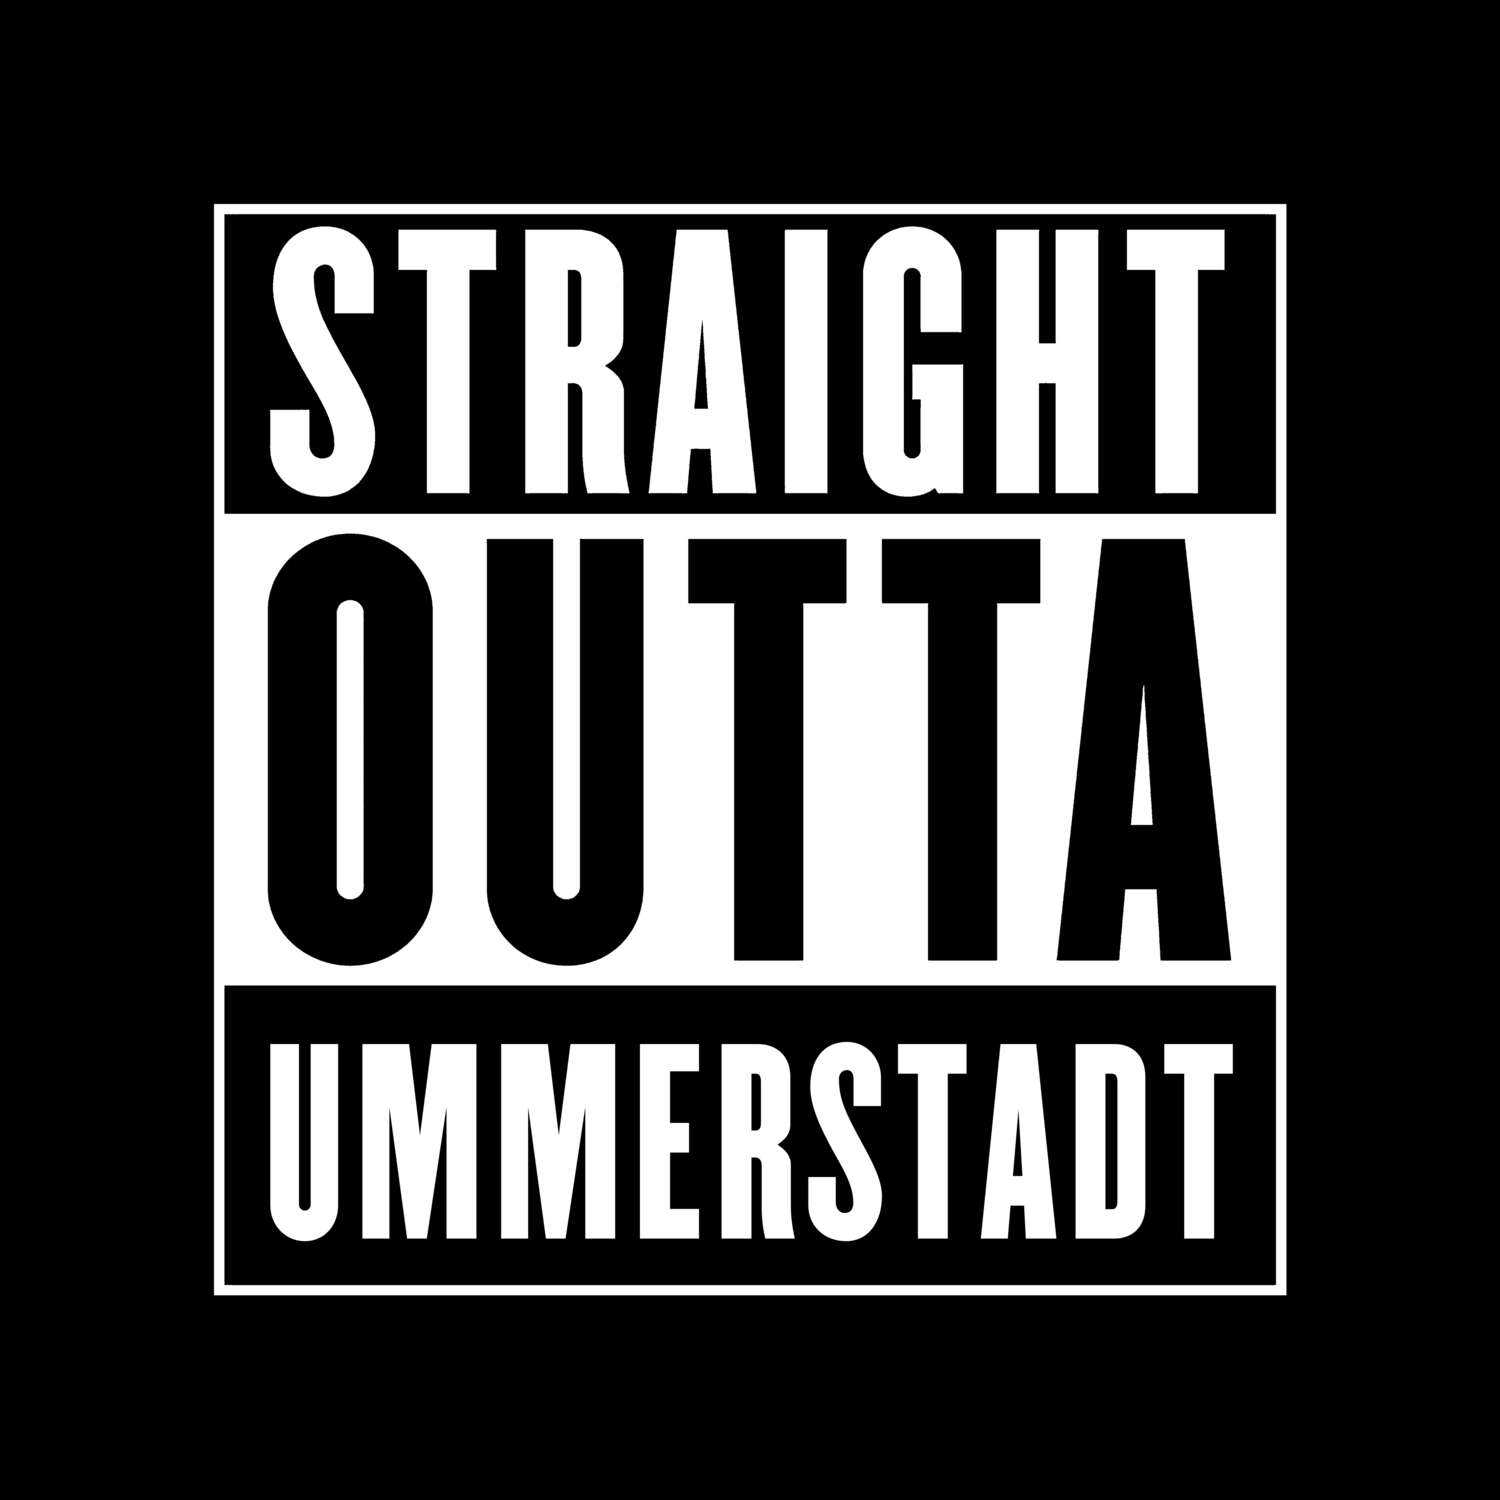 Ummerstadt T-Shirt »Straight Outta«